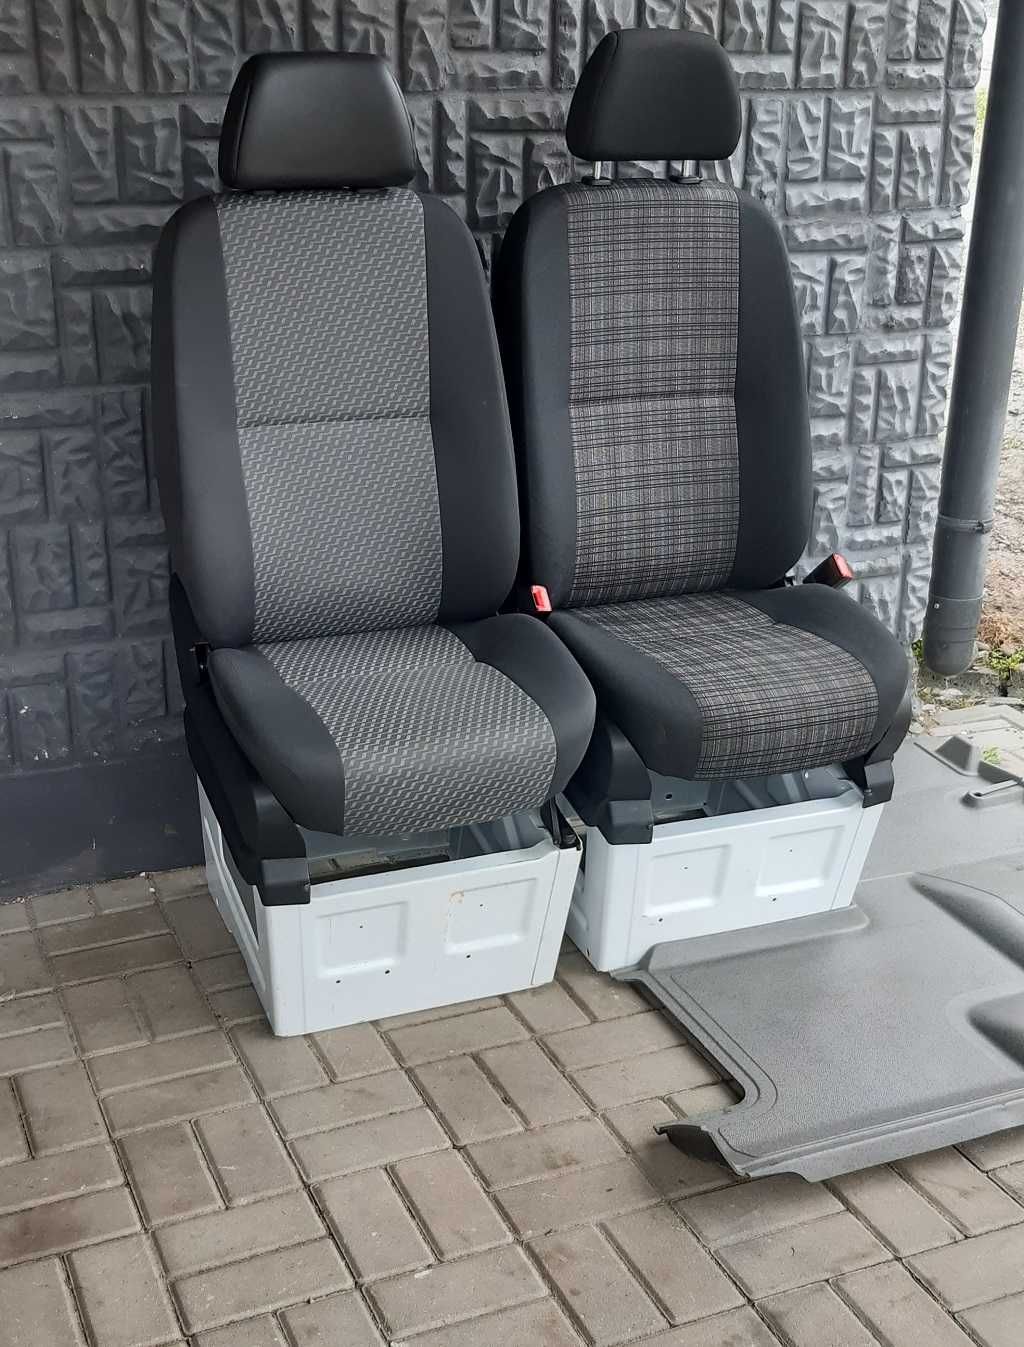 Fotel/Siedzenie pasażera Mercedes Sprinter 906, Vw Crafter